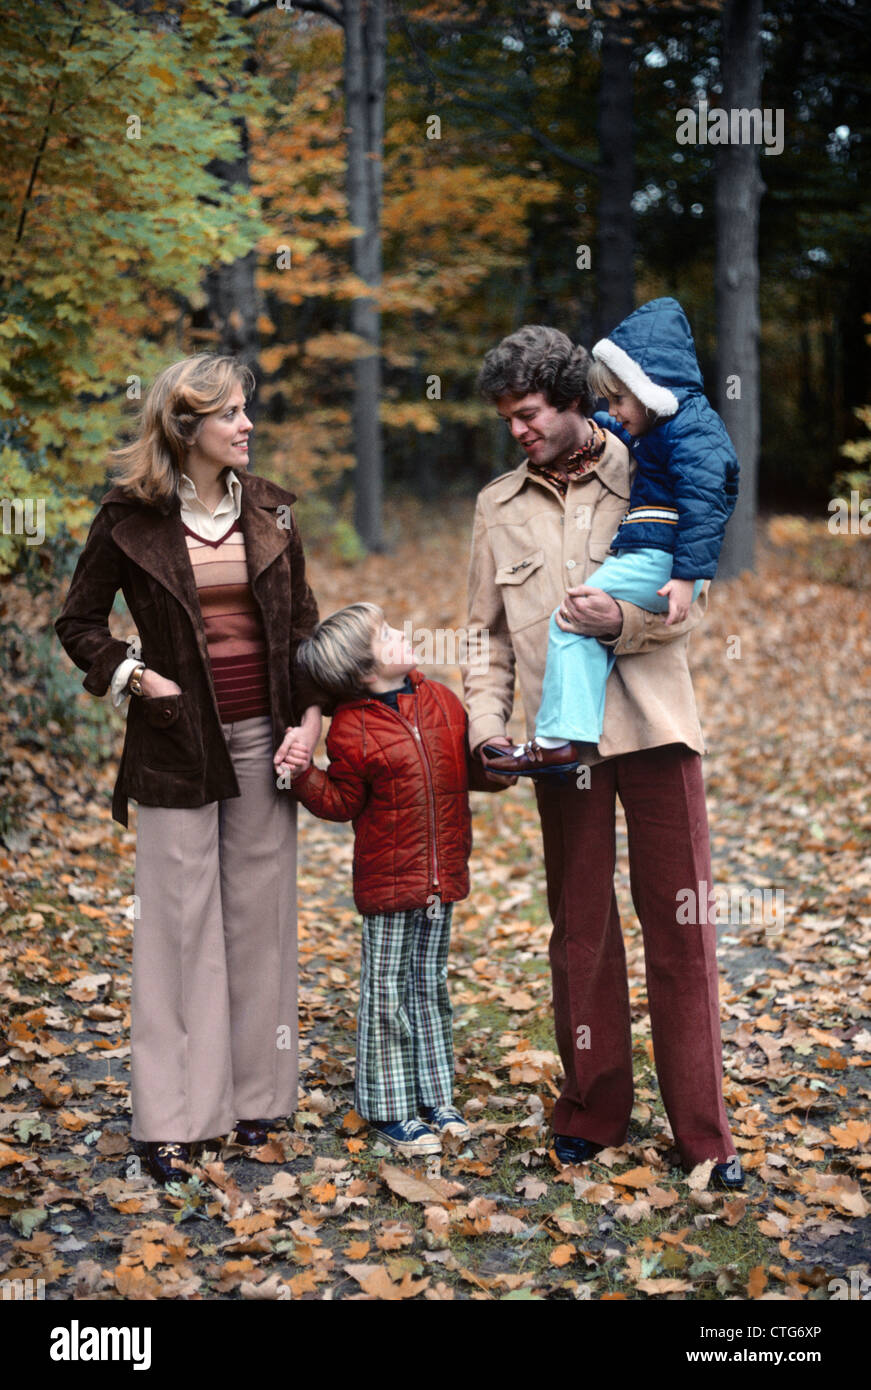 1970 FAMILLE DE QUATRE MARCHE DANS PAYSAGE D'AUTOMNE HOLDING HANDS FATHER CARRYING GIRL TALKING TO BOY Banque D'Images